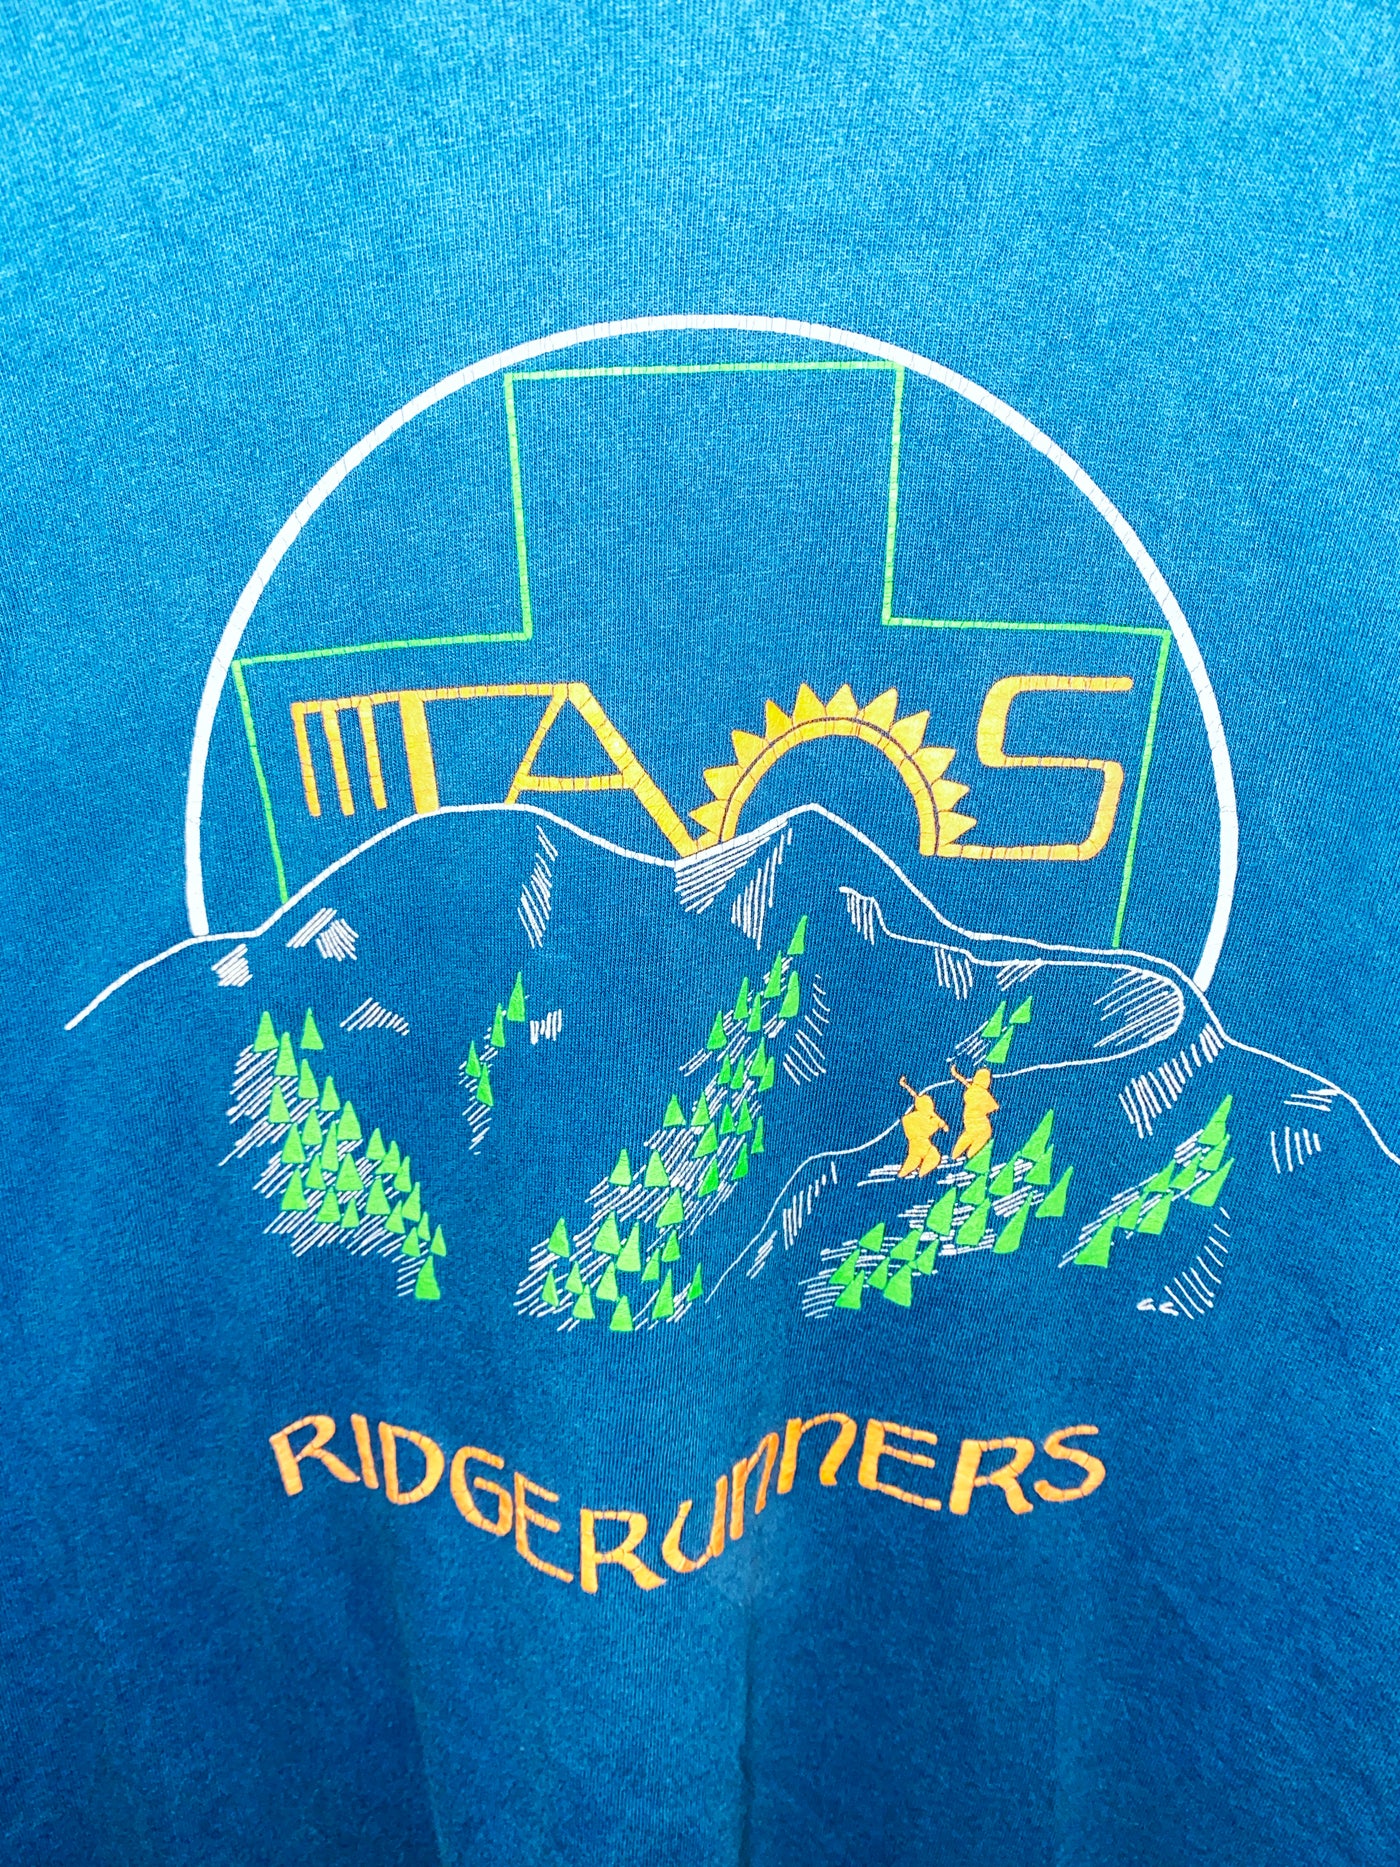 Vintage 80s Ridgerunners Skiing Shirt